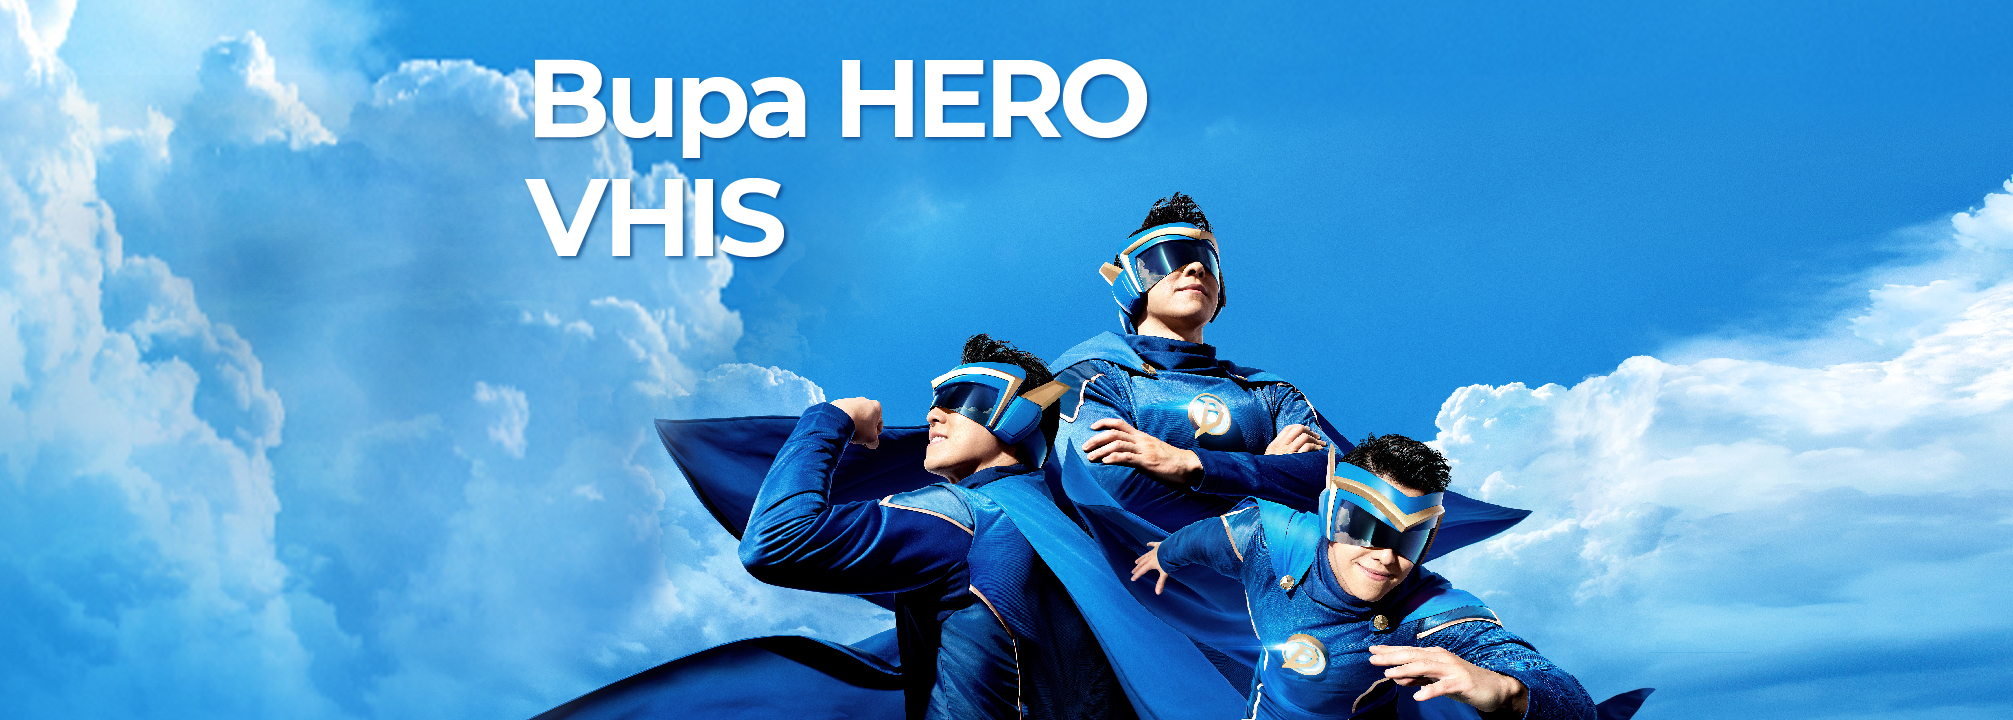 Bupa HERO VHIS_Hero for your family_en